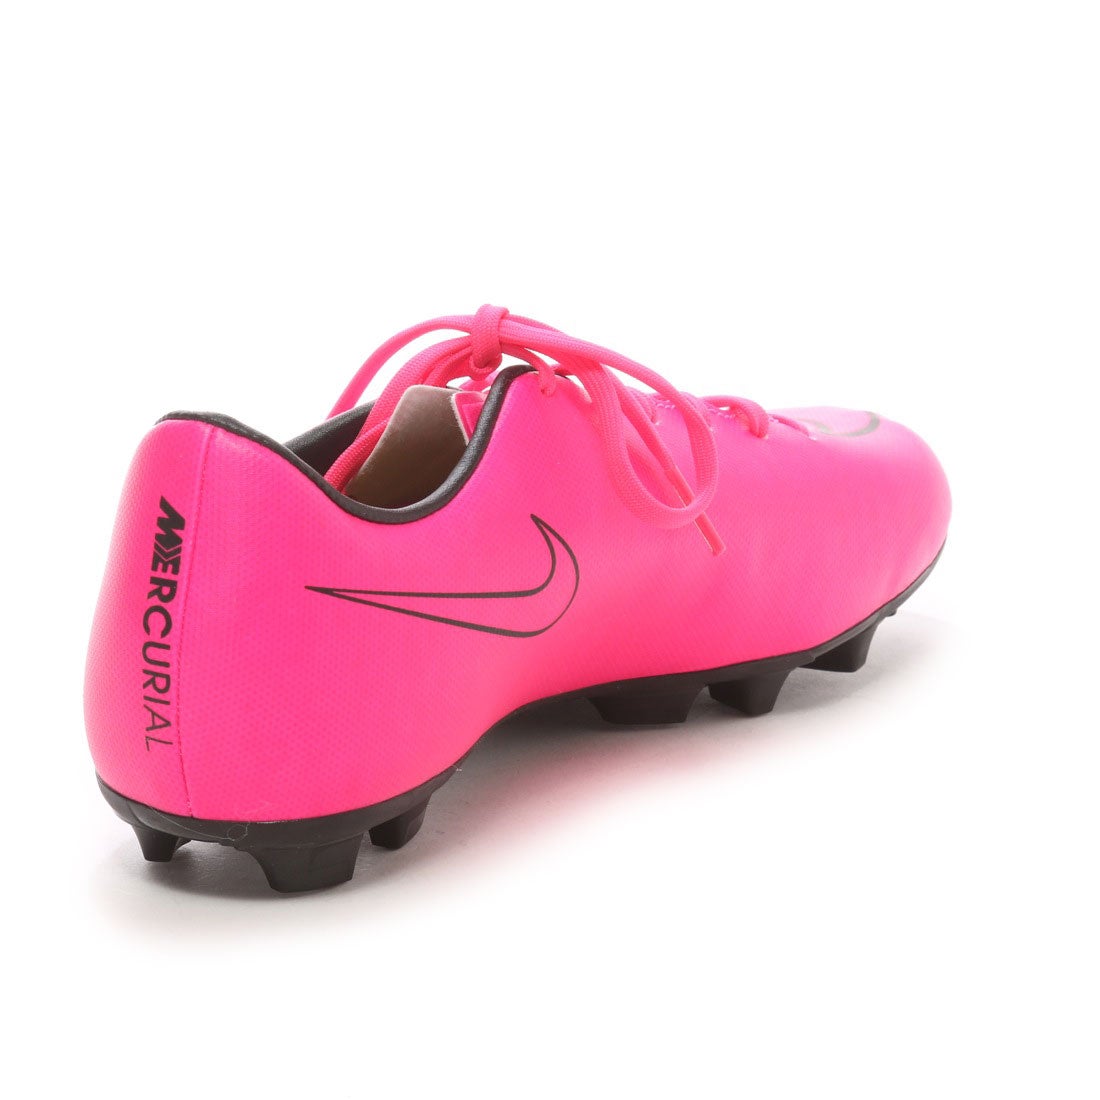 ナイキ Nike ジュニアサッカースパイク Jr マーキュリアル ビクトリー Hg V ピンク 2665 ピンクp 靴 ファッション通販 ロコンド 自宅で試着 気軽に返品